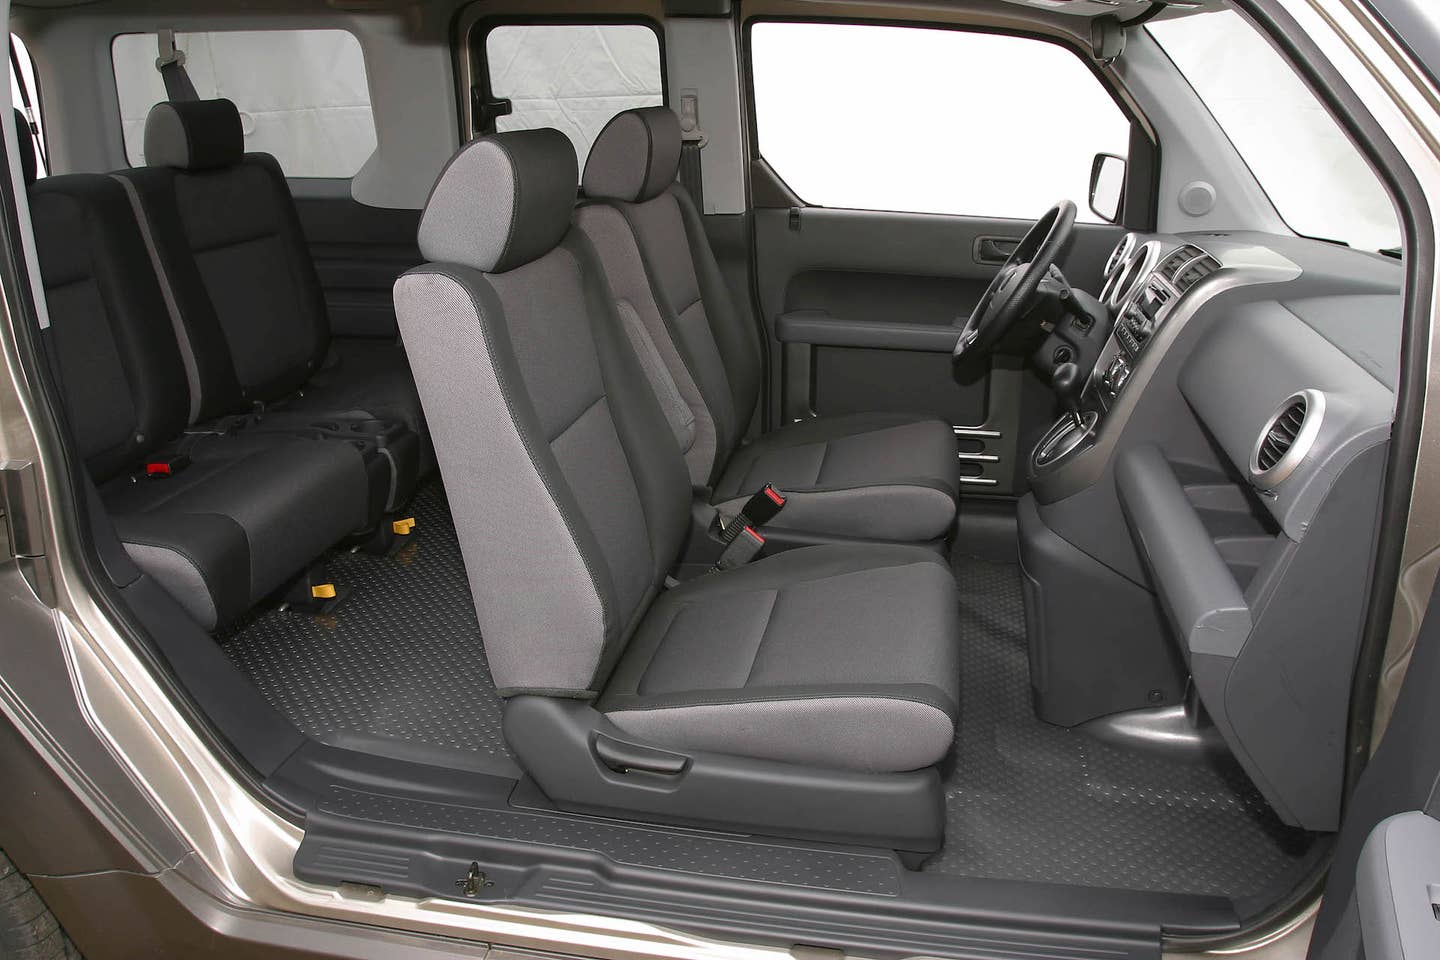 2004 Honda Element EX interior.